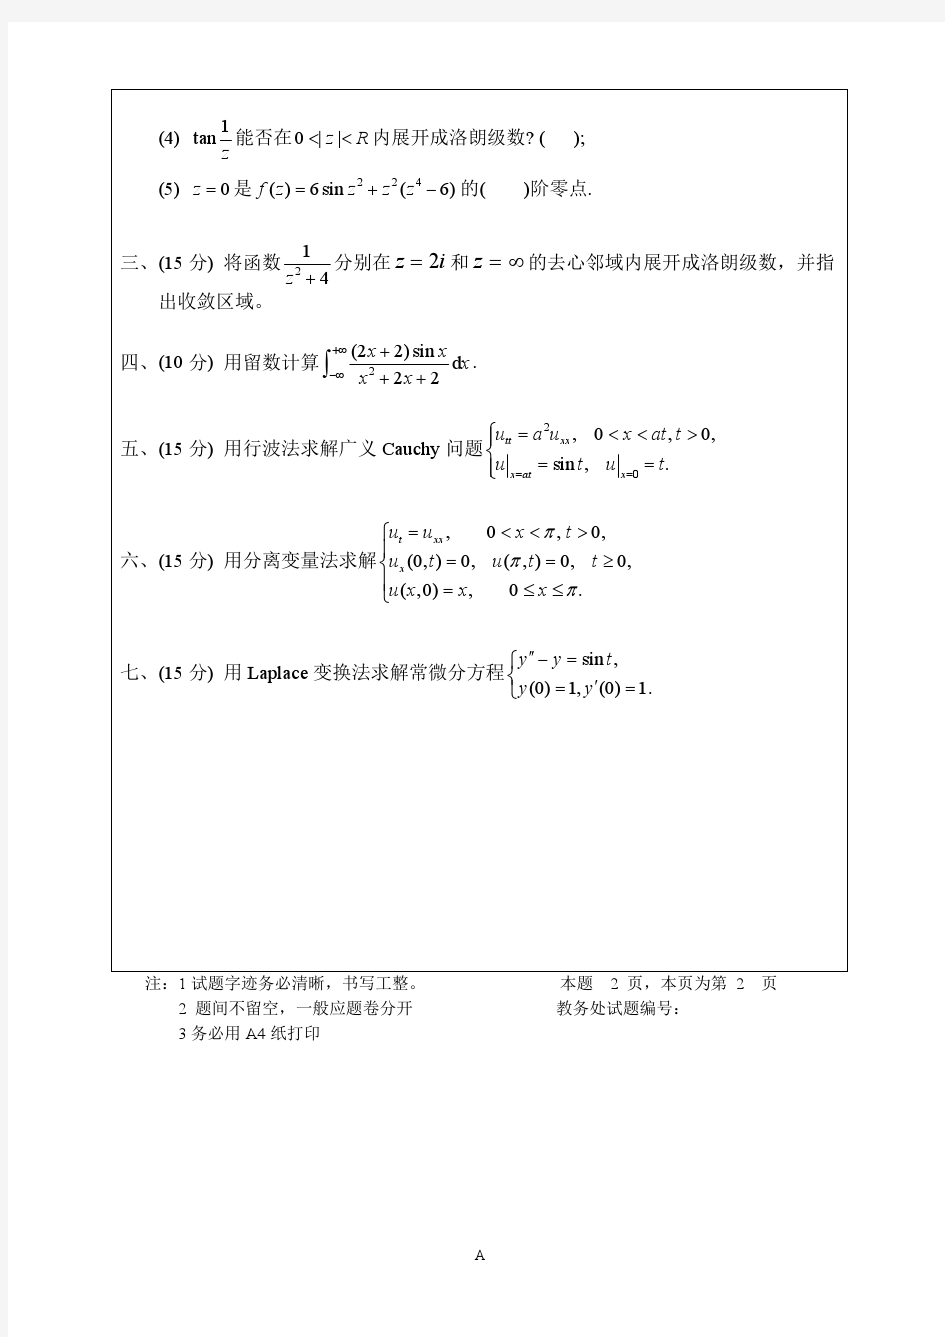 四川大学数学物理方法12-13下试题(A)